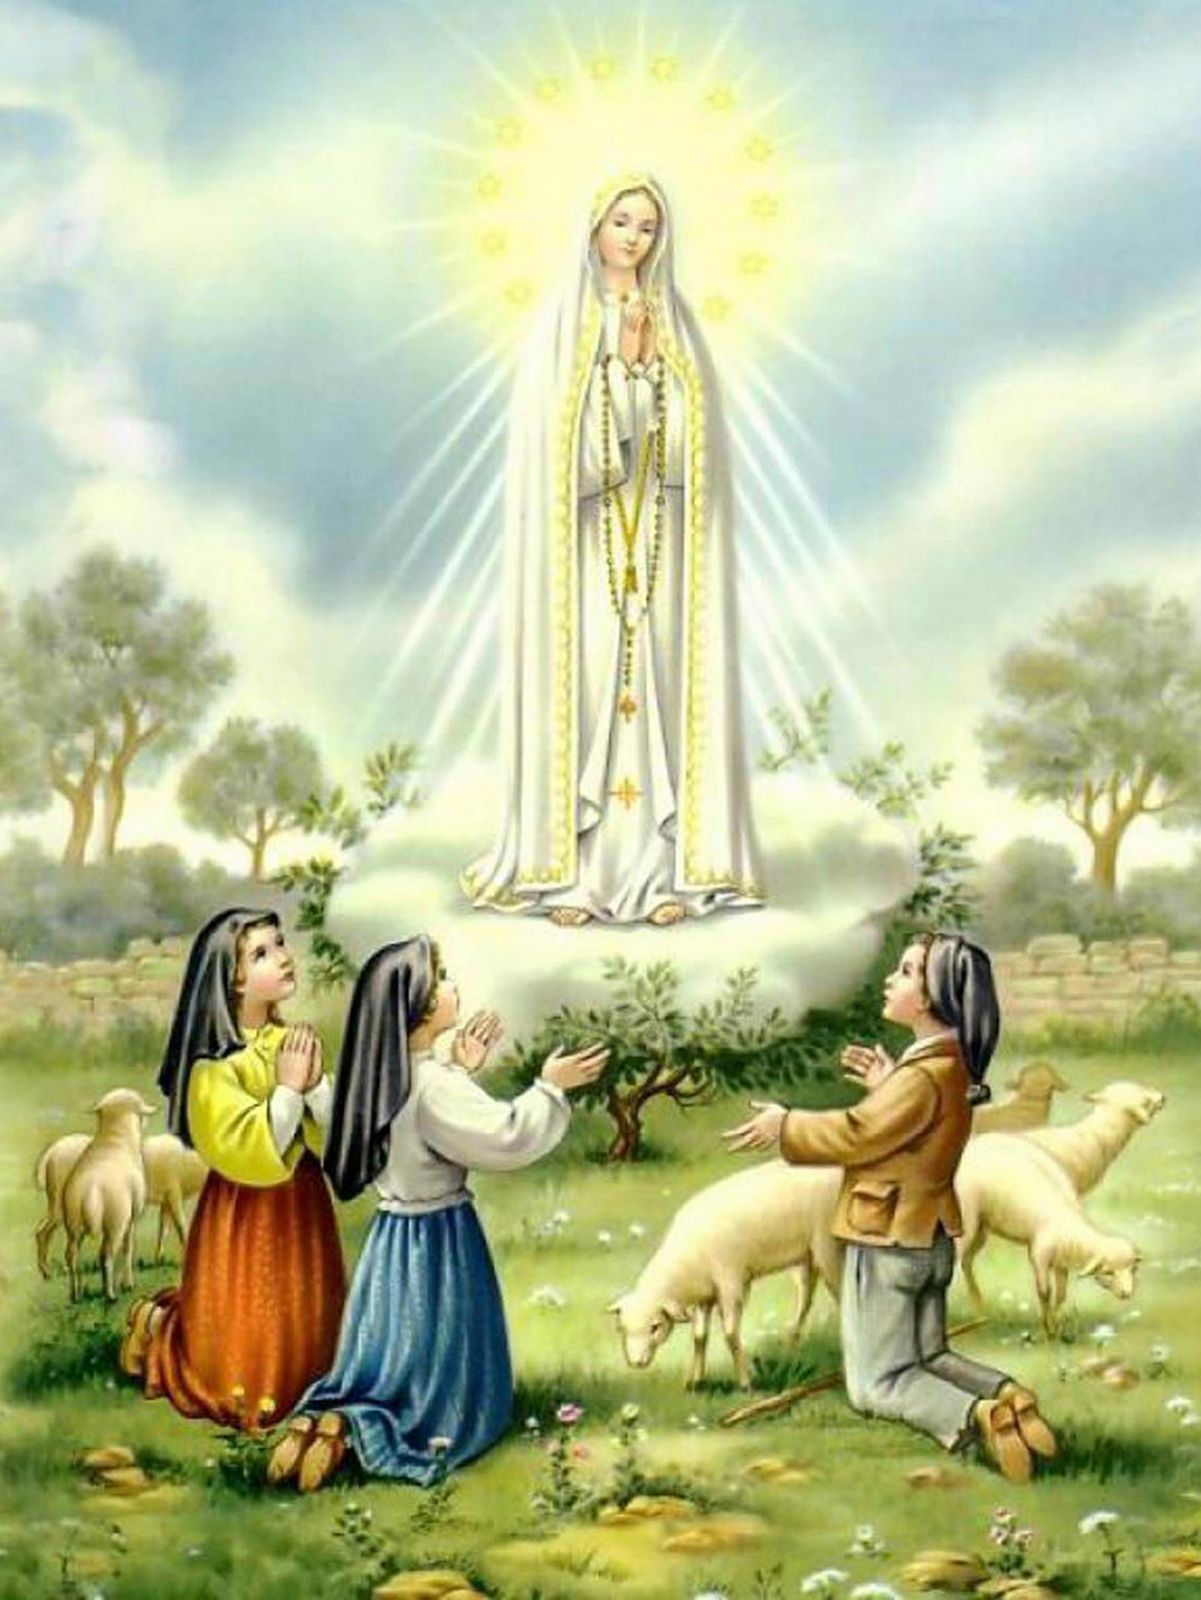 Iconografia da Primeira Aparição de Nossa Senhora em Fátima!